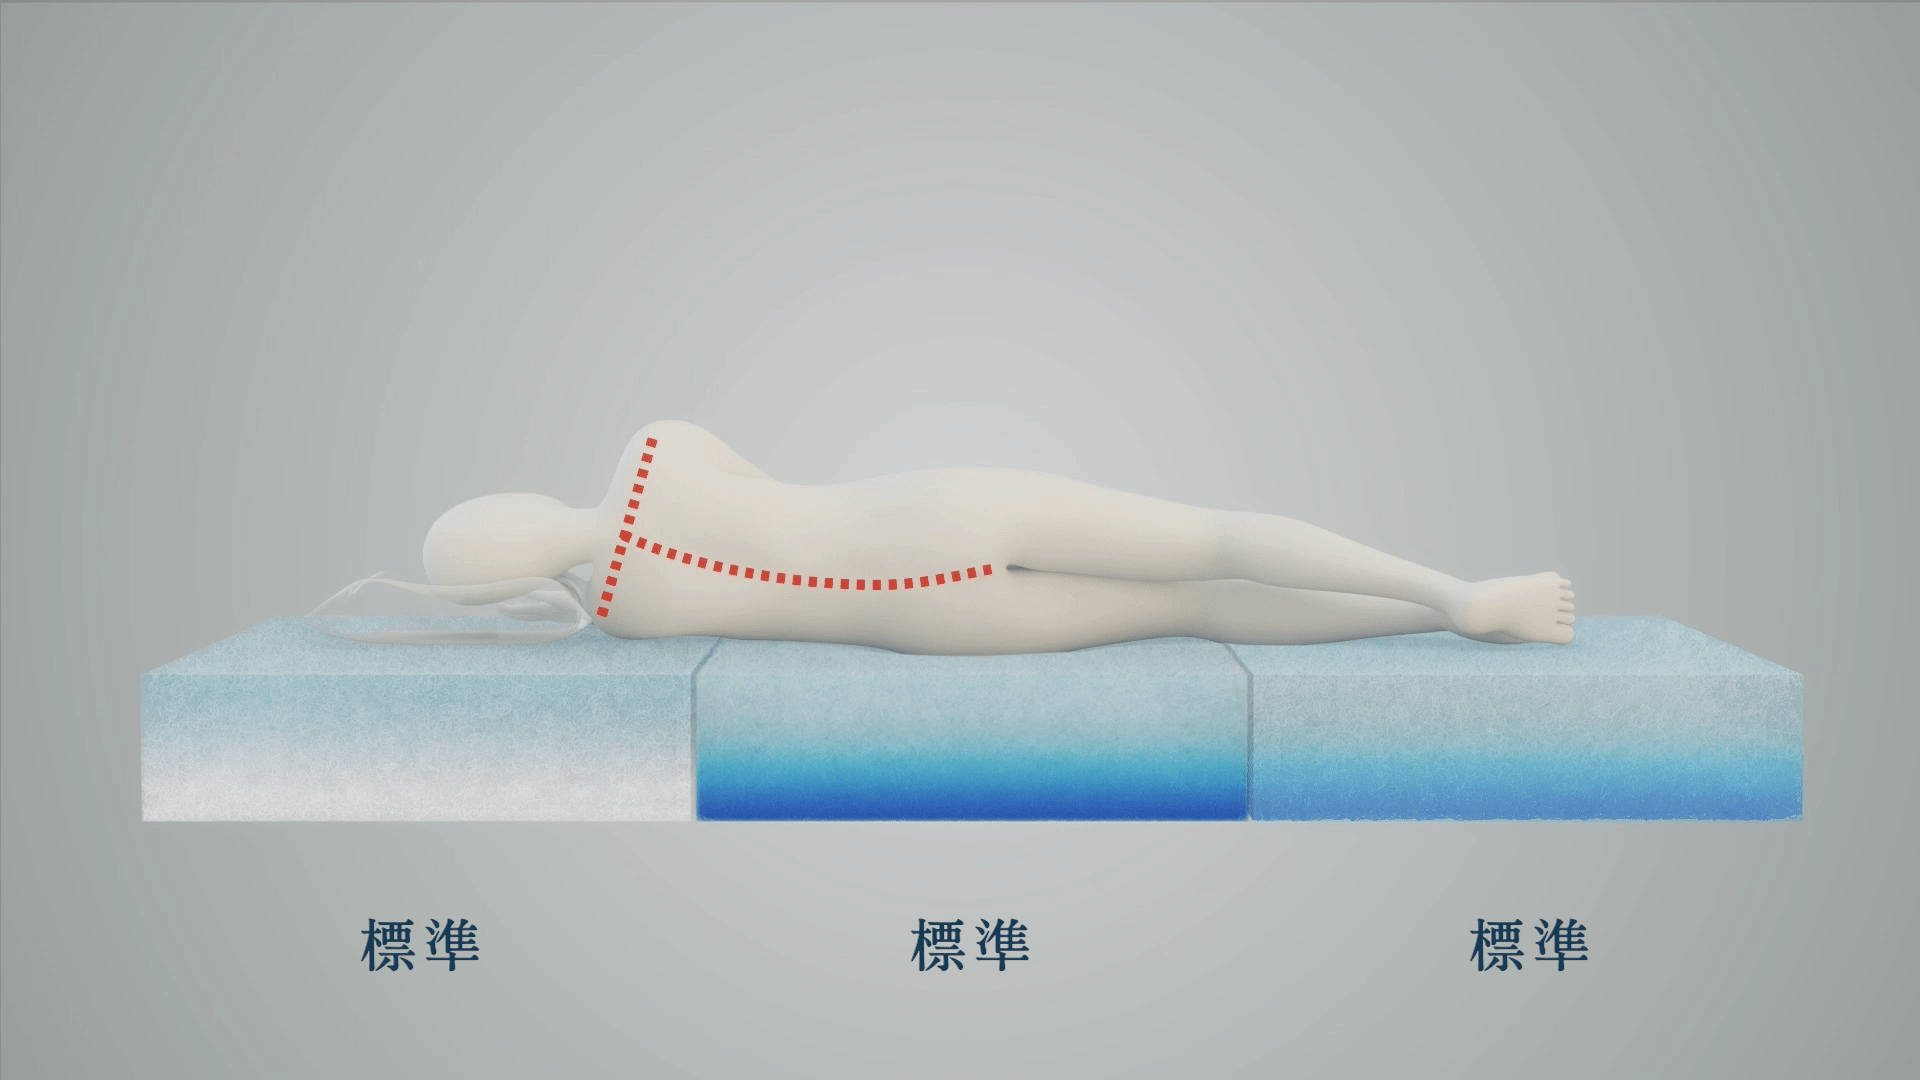 マットへ寝る姿勢の比較：側臥位